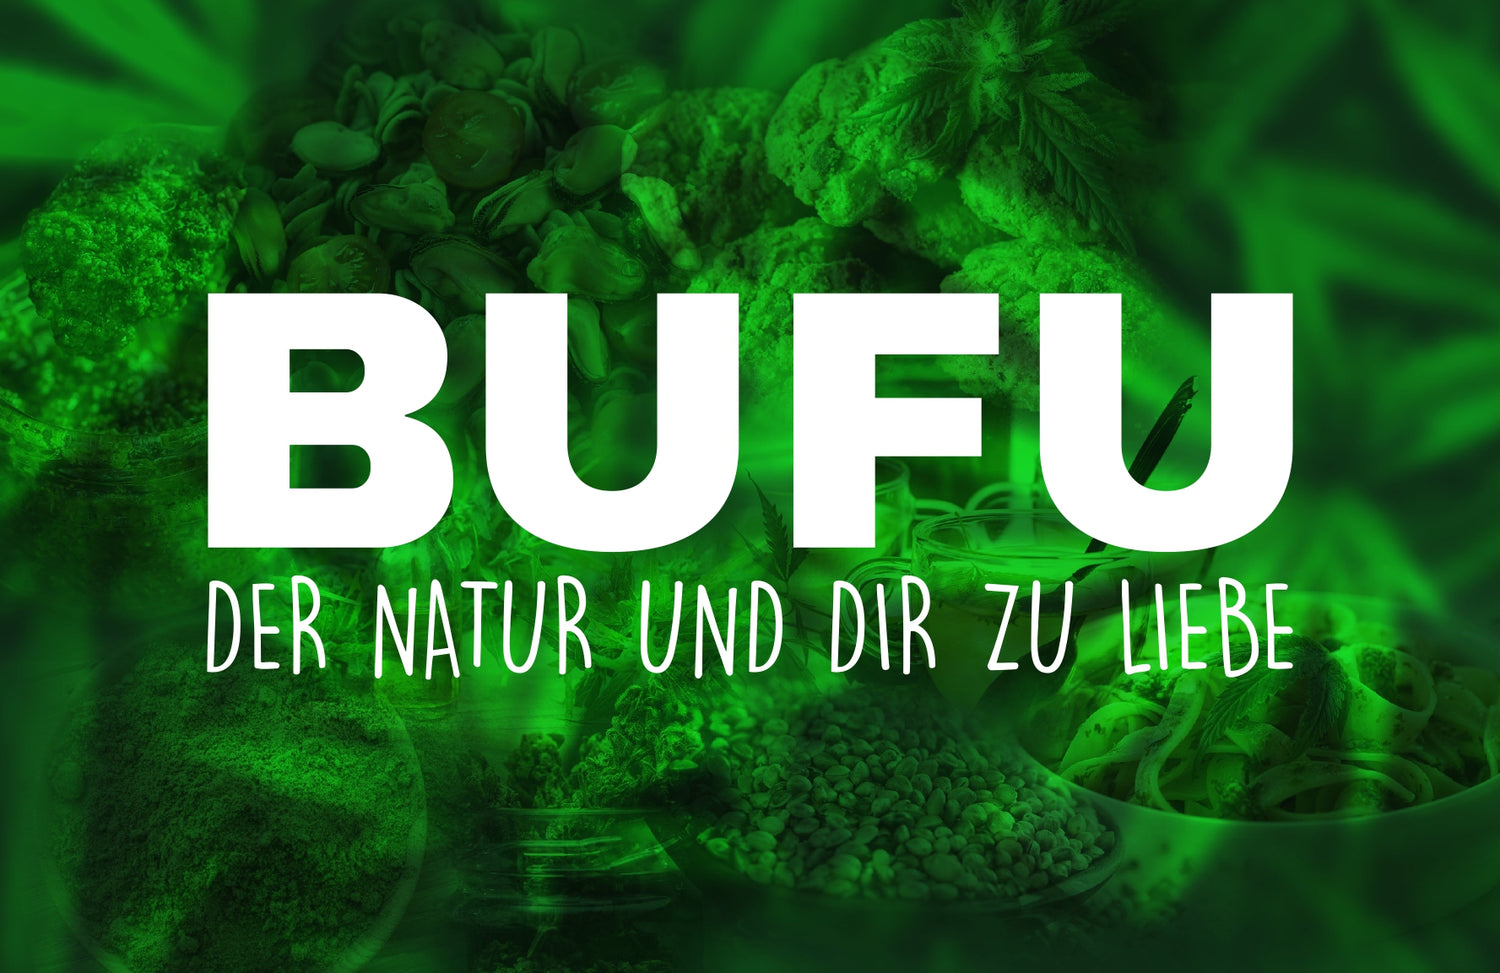 BUFU Hanf & CBD Shop - Marketingbild mit Aufschrift "BUFU" "Der Natur und Dir zu Liebe"